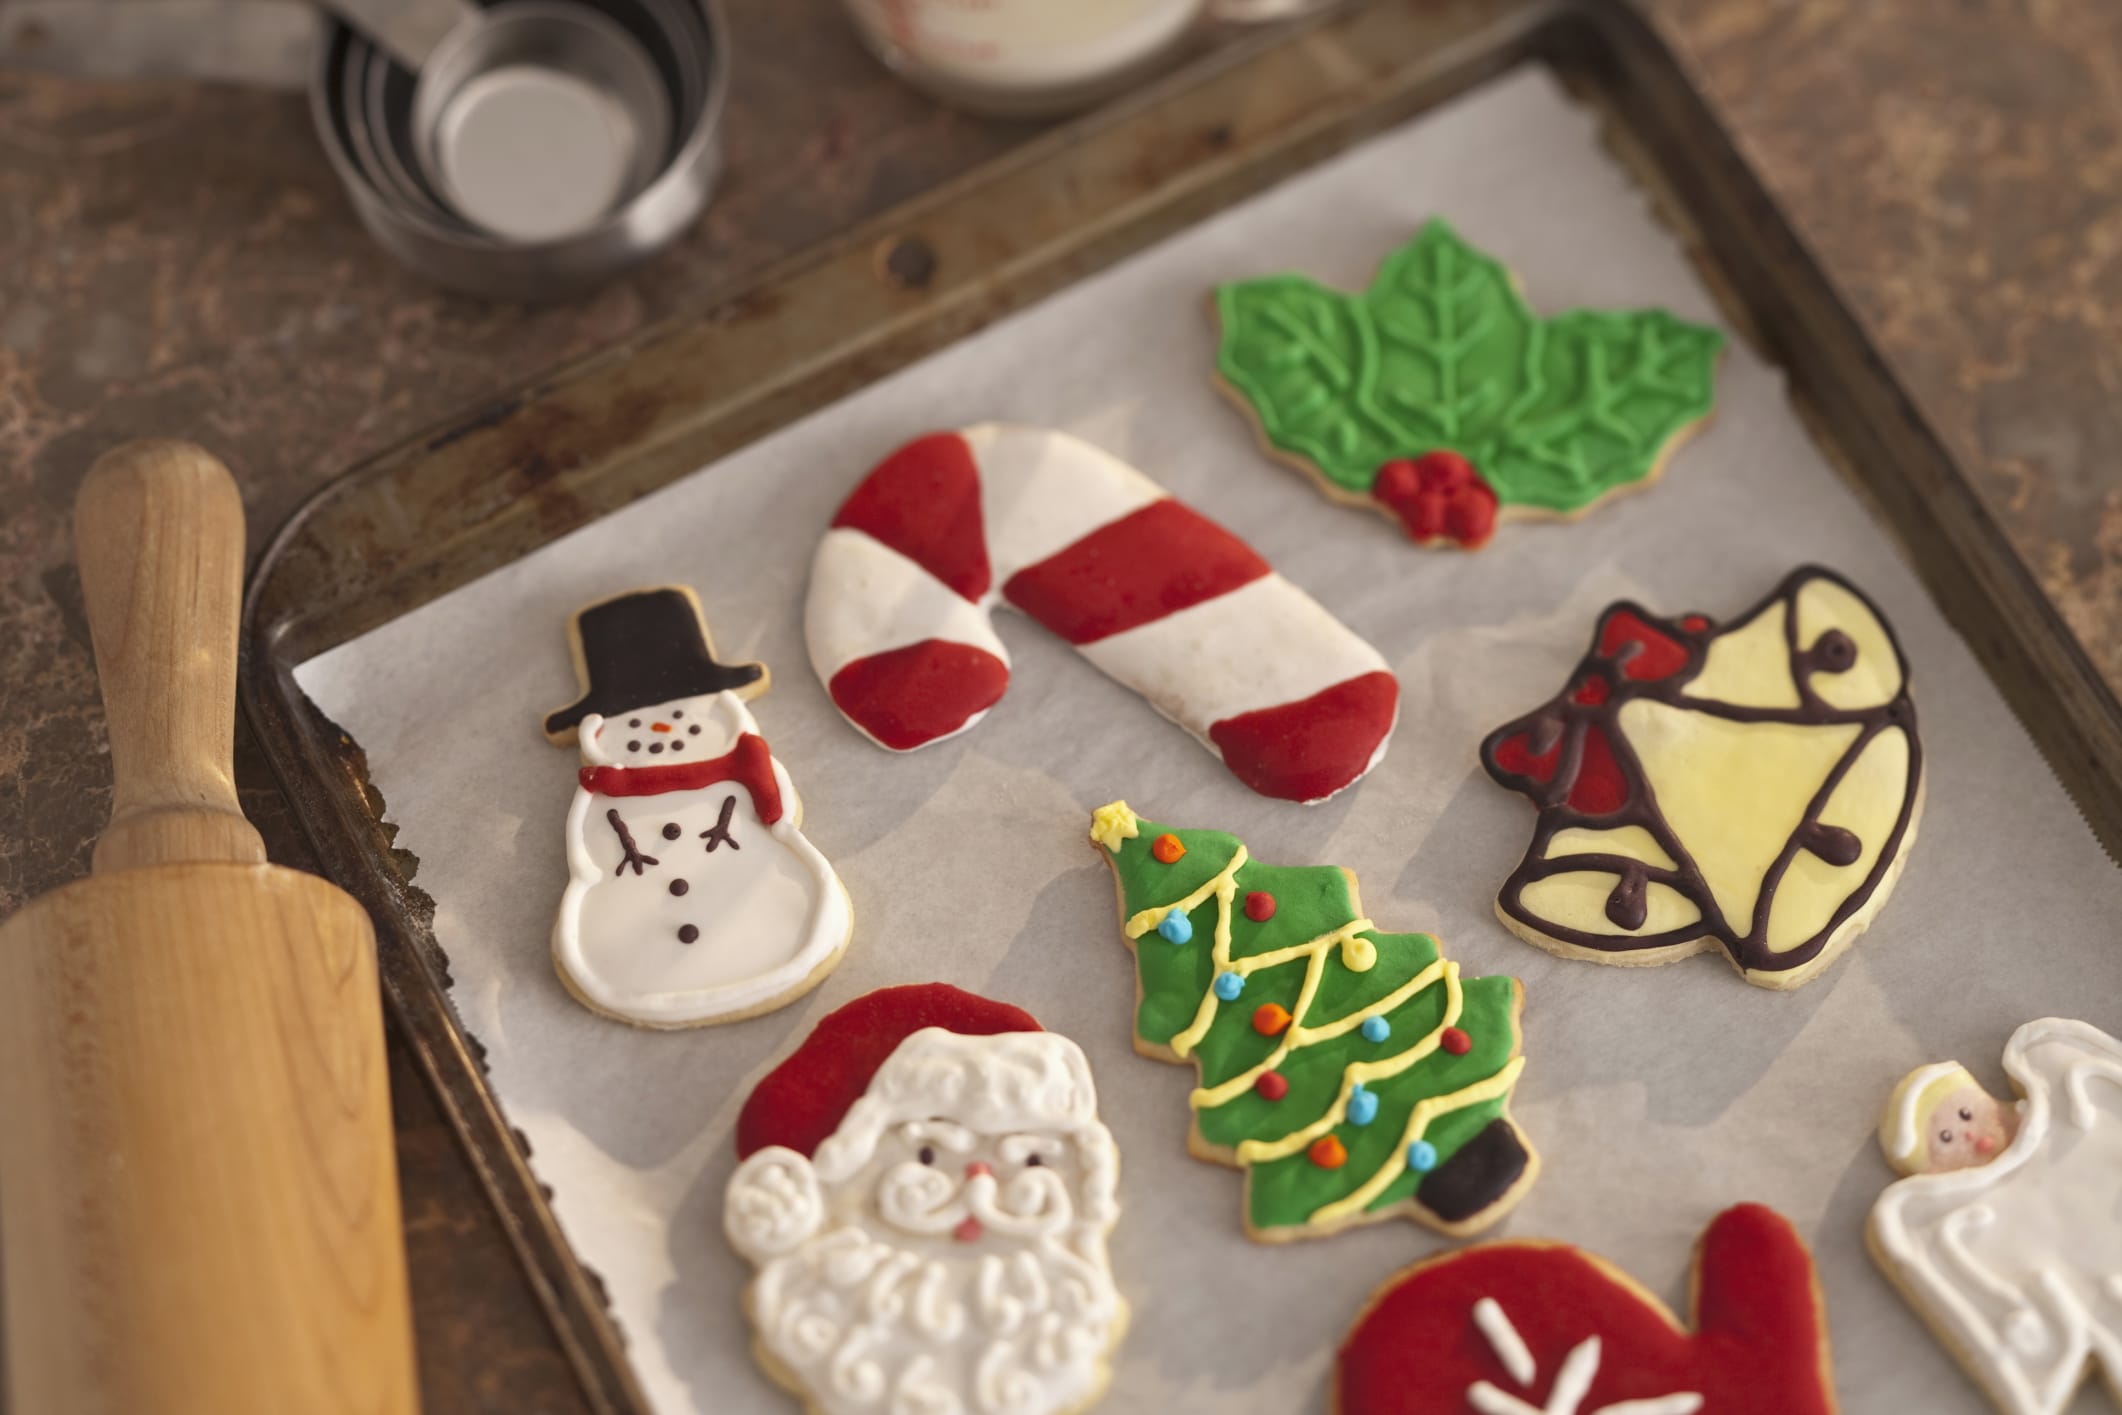 Come Si Decorano I Biscotti Di Natale.Regali Di Natale Fai Da Te I Biscotti Di Pasta Frolla Con La Glassa